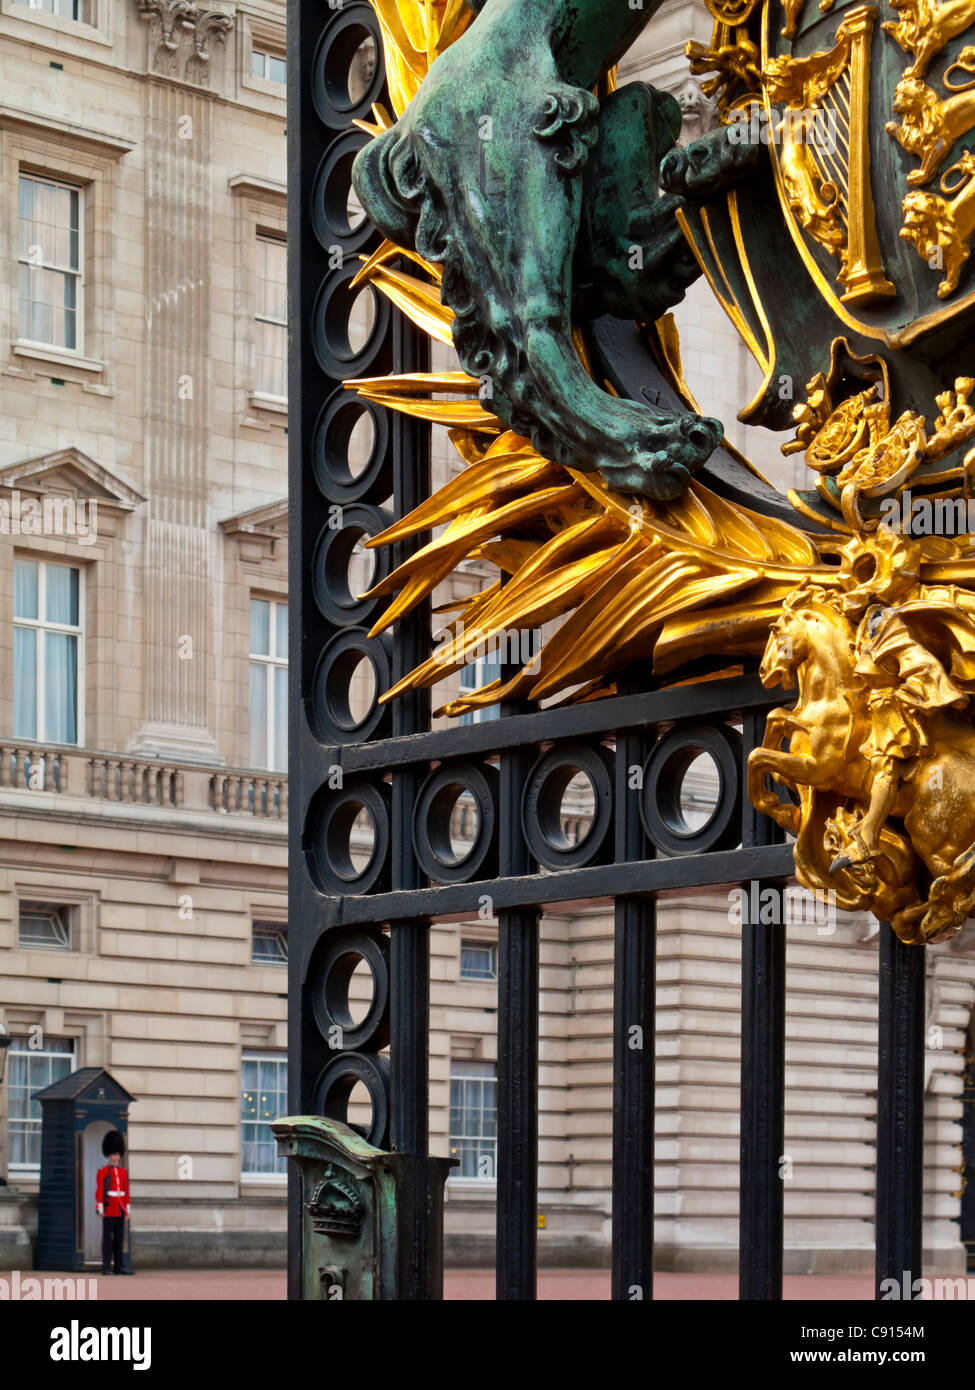 Detalle de las puertas en la parte delantera del Palacio de Buckingham Londres Inglaterra la principal residencia de la monarquía británica y la Familia Real Foto de stock